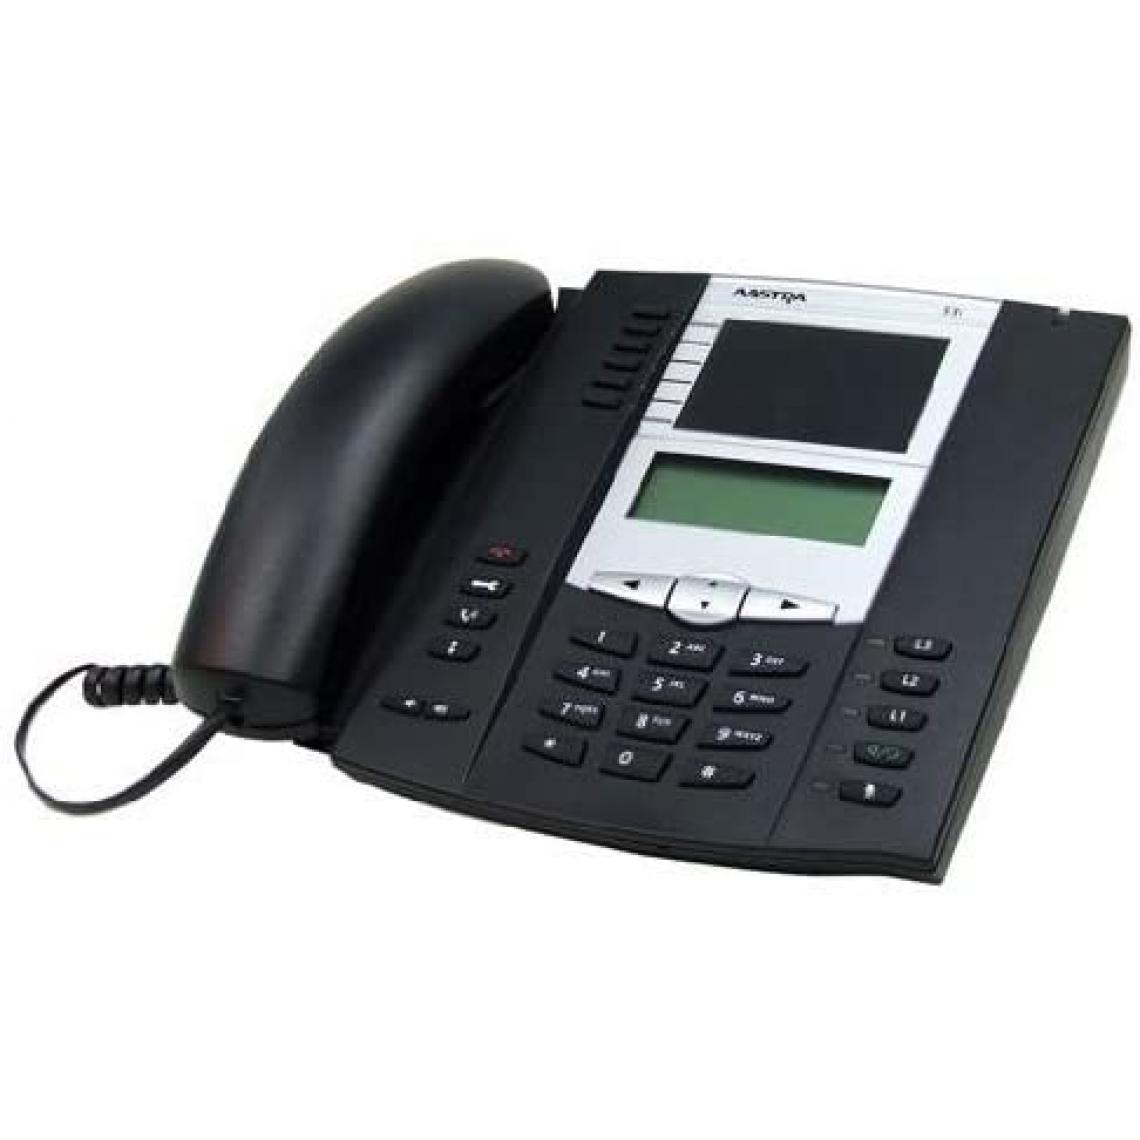 Aastra - Aastra A1753 6753i Téléphone VoIP avec bloc secteur - Téléphone fixe filaire